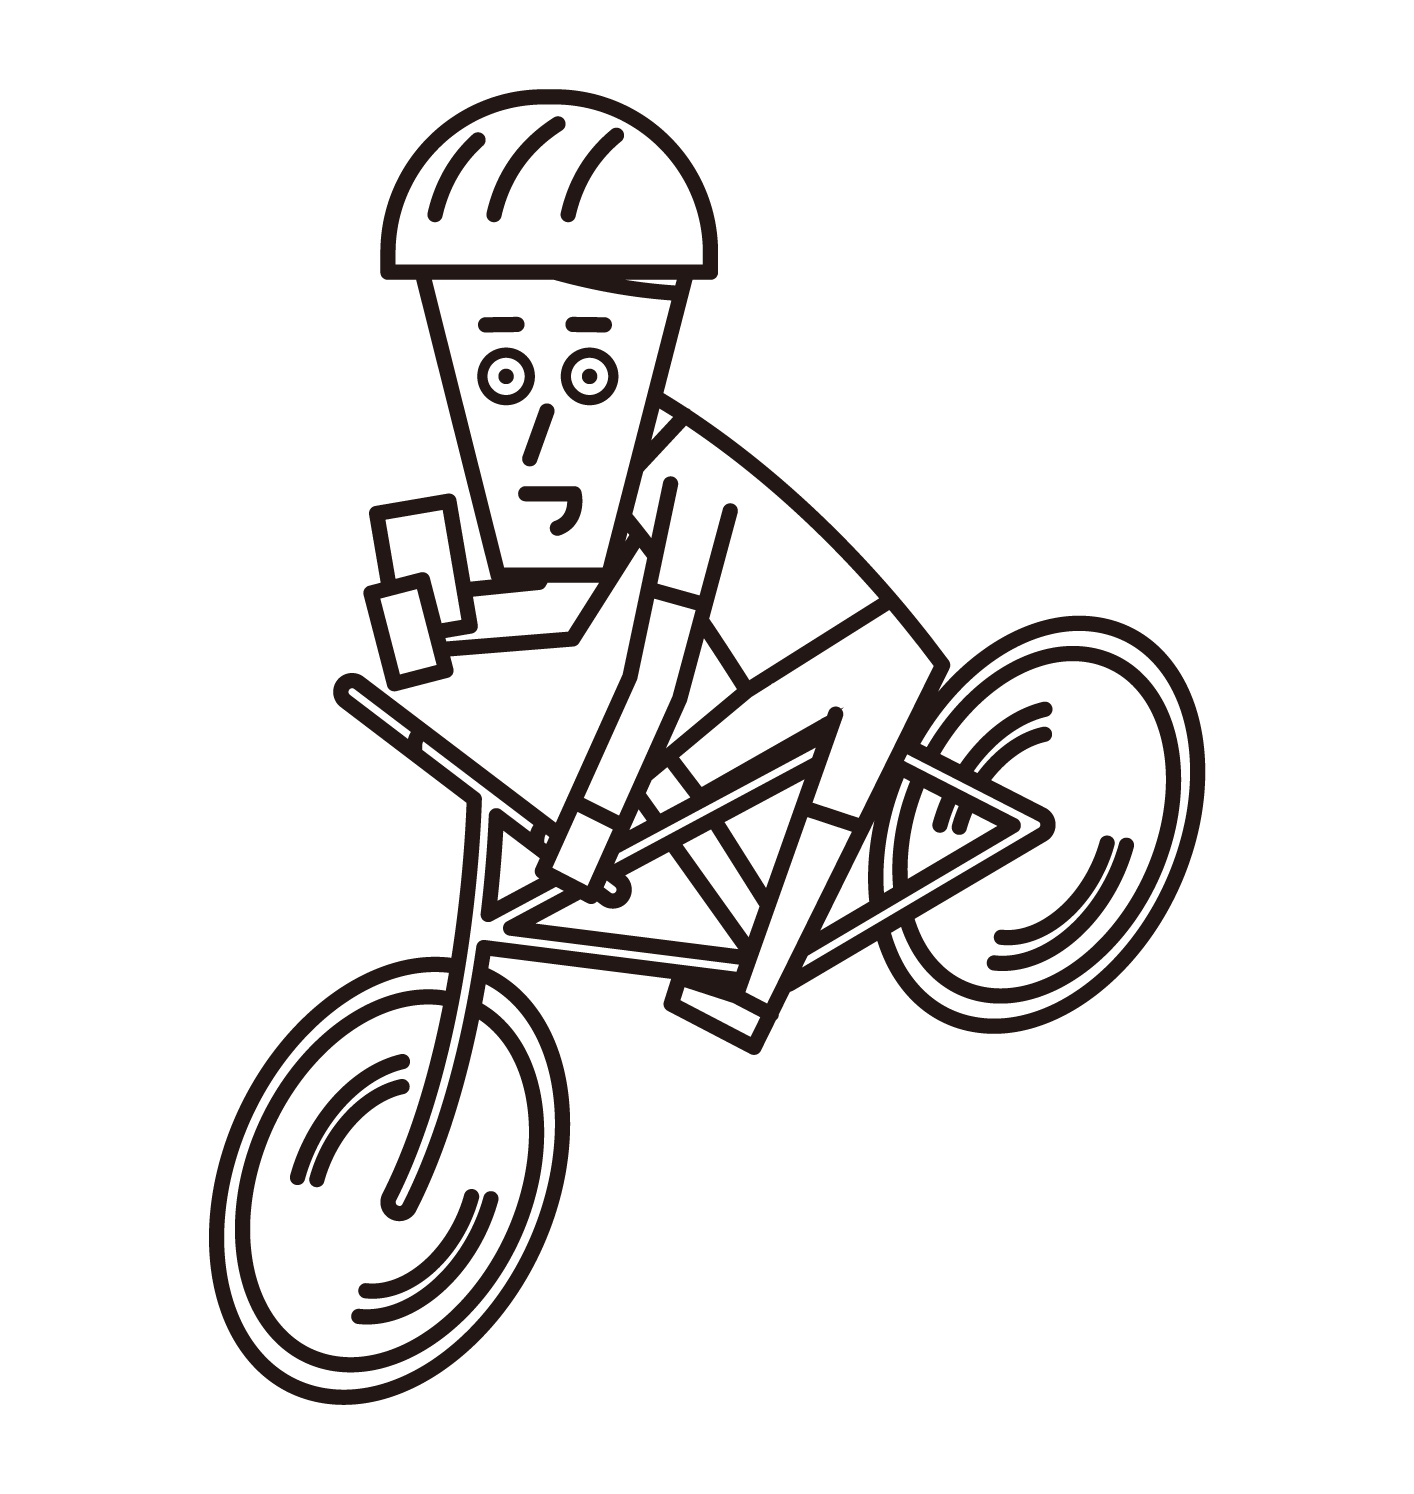 操作智慧手機時駕駛自行車的人（男性）的插圖